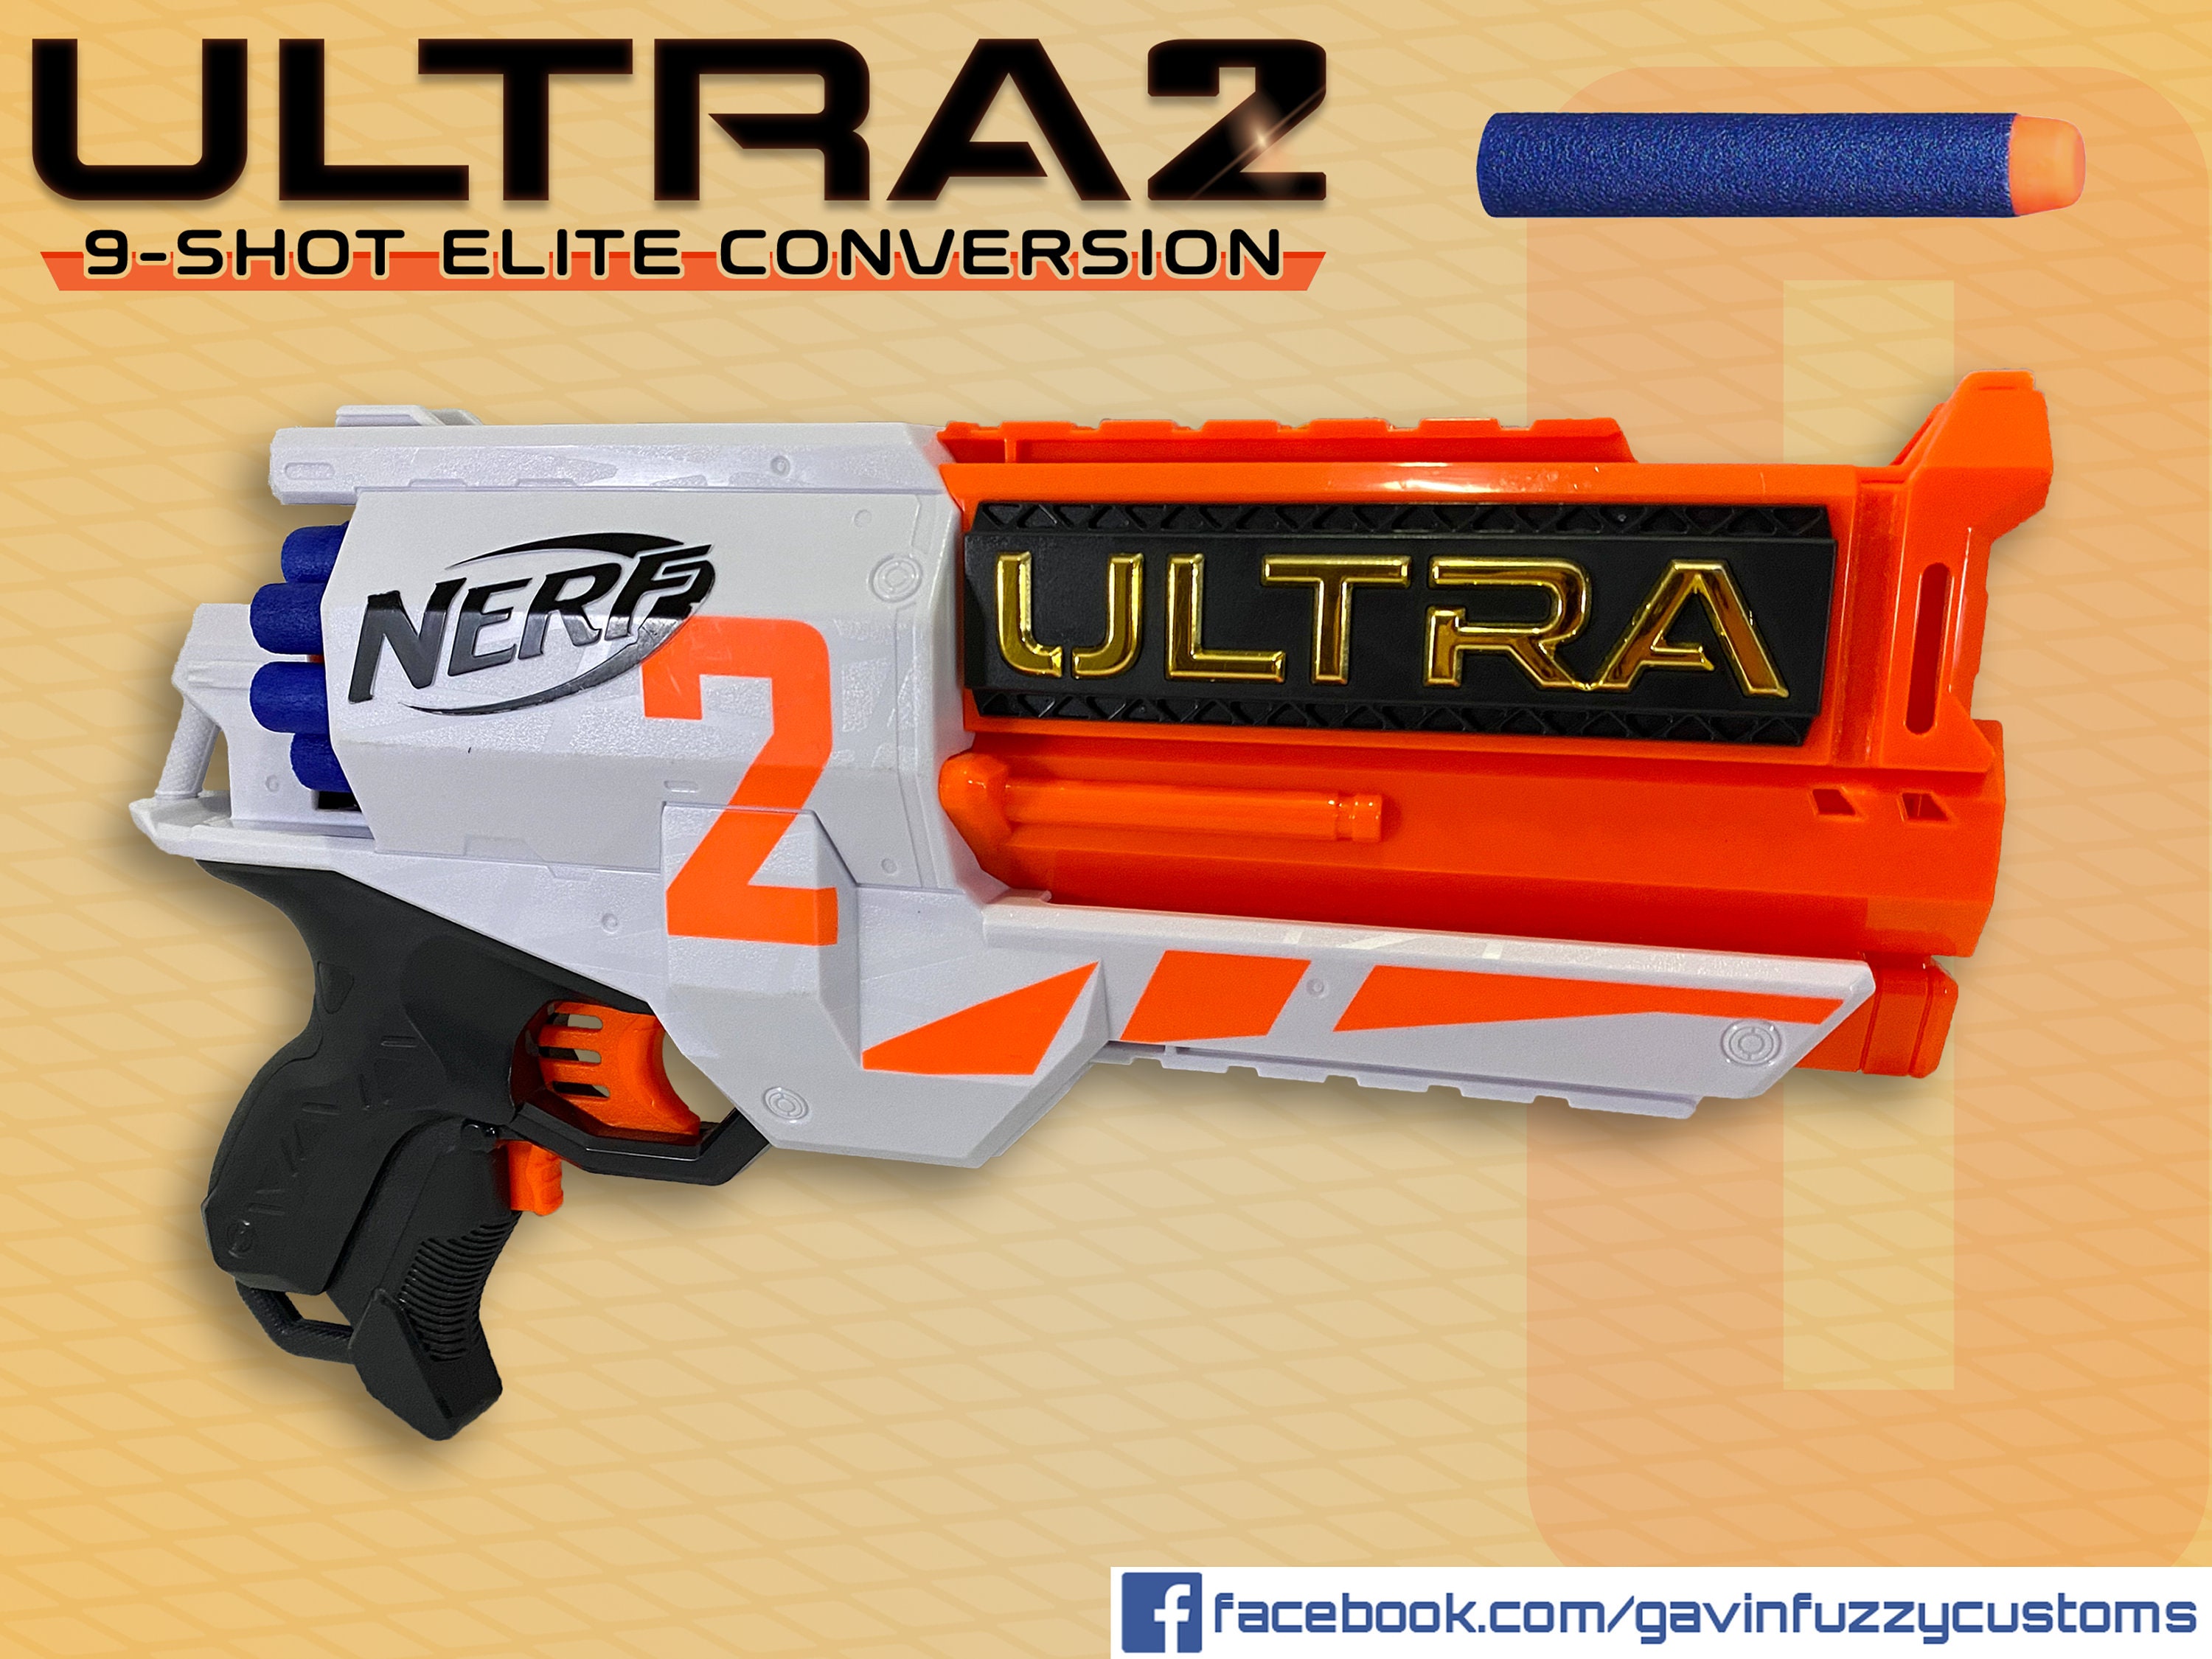 Nerf 2 9-shot Elite Conversion - Etsy